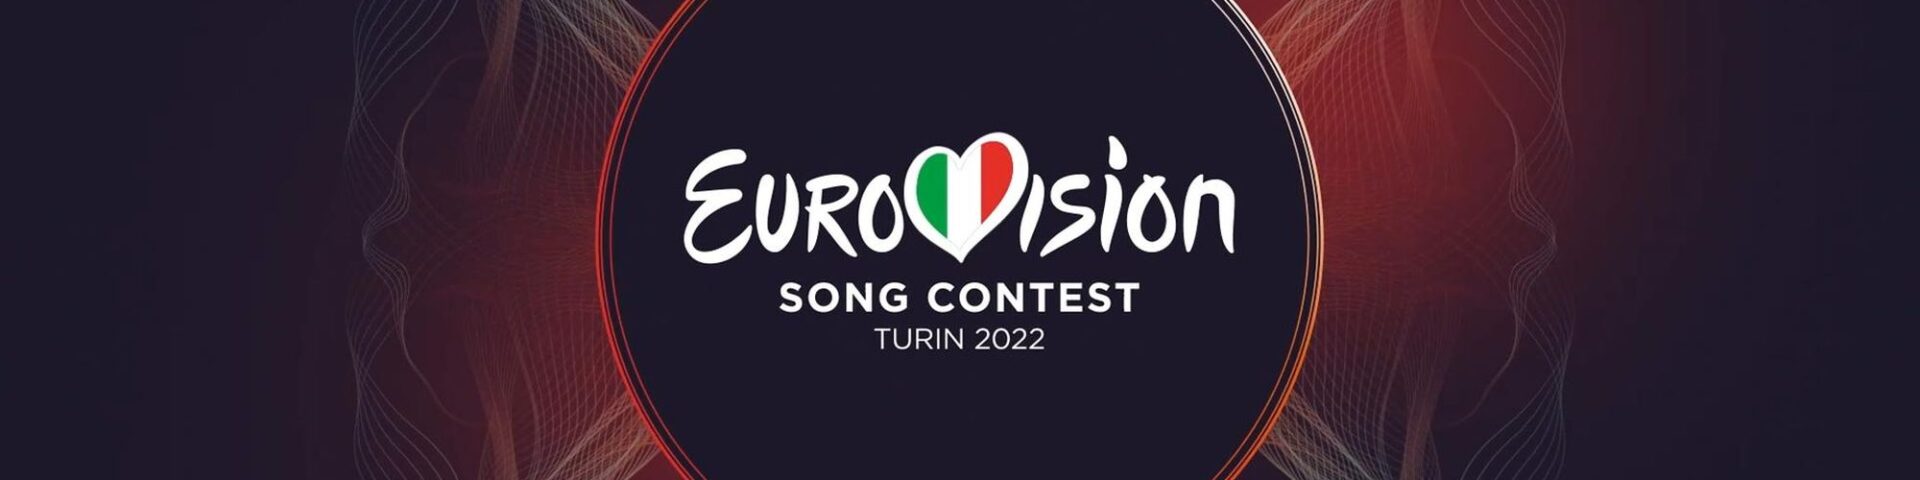 Eurovision Song Contest 2022: come acquistare i biglietti per l’evento a Torino